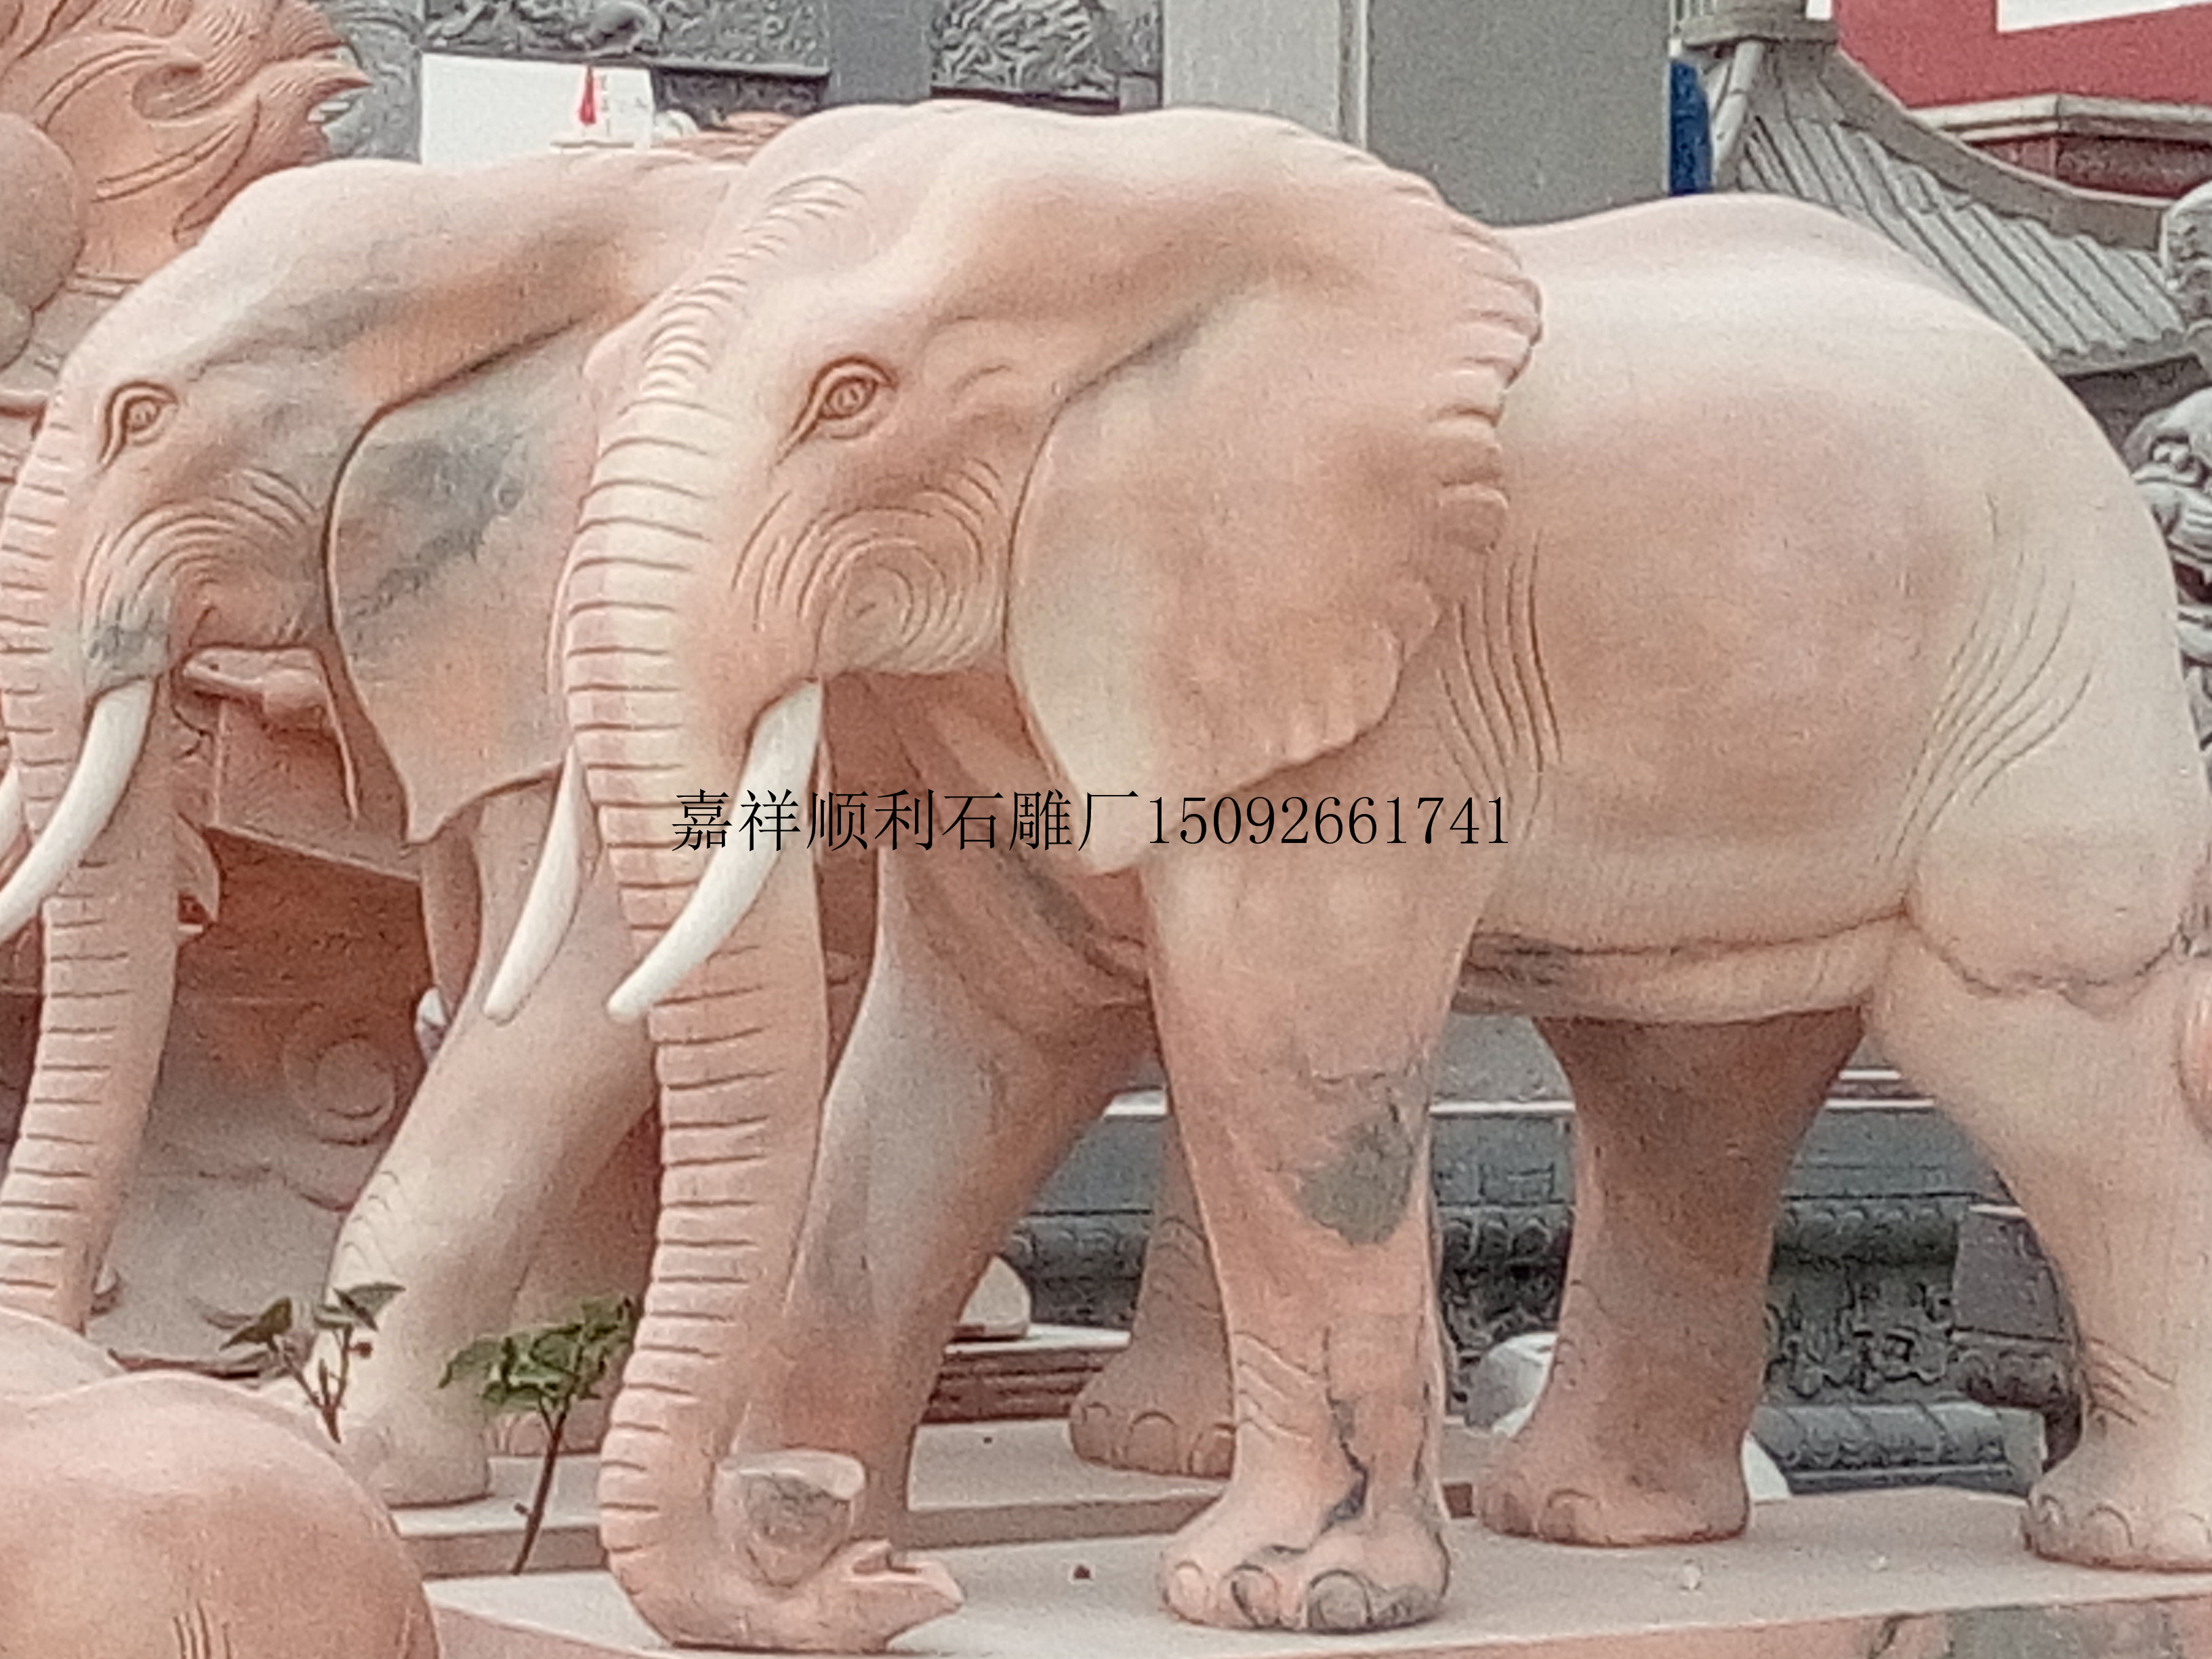 石雕大象晚霞红大象佛教石象石雕象批发